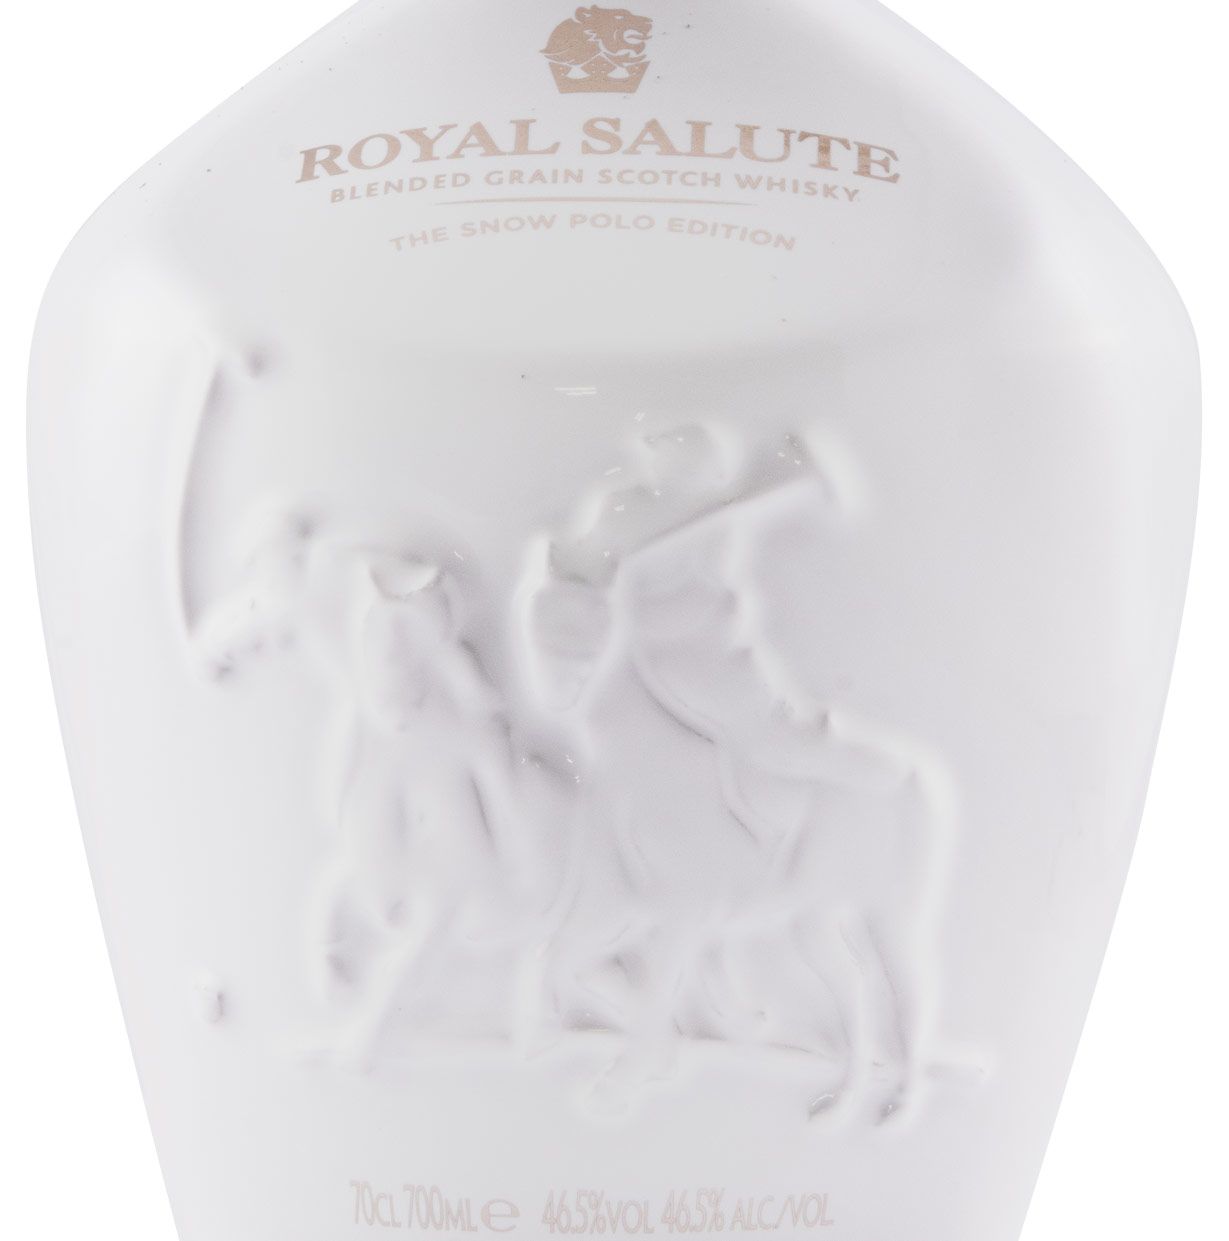 Royal Salute The Snow Polo Edition 21 anos